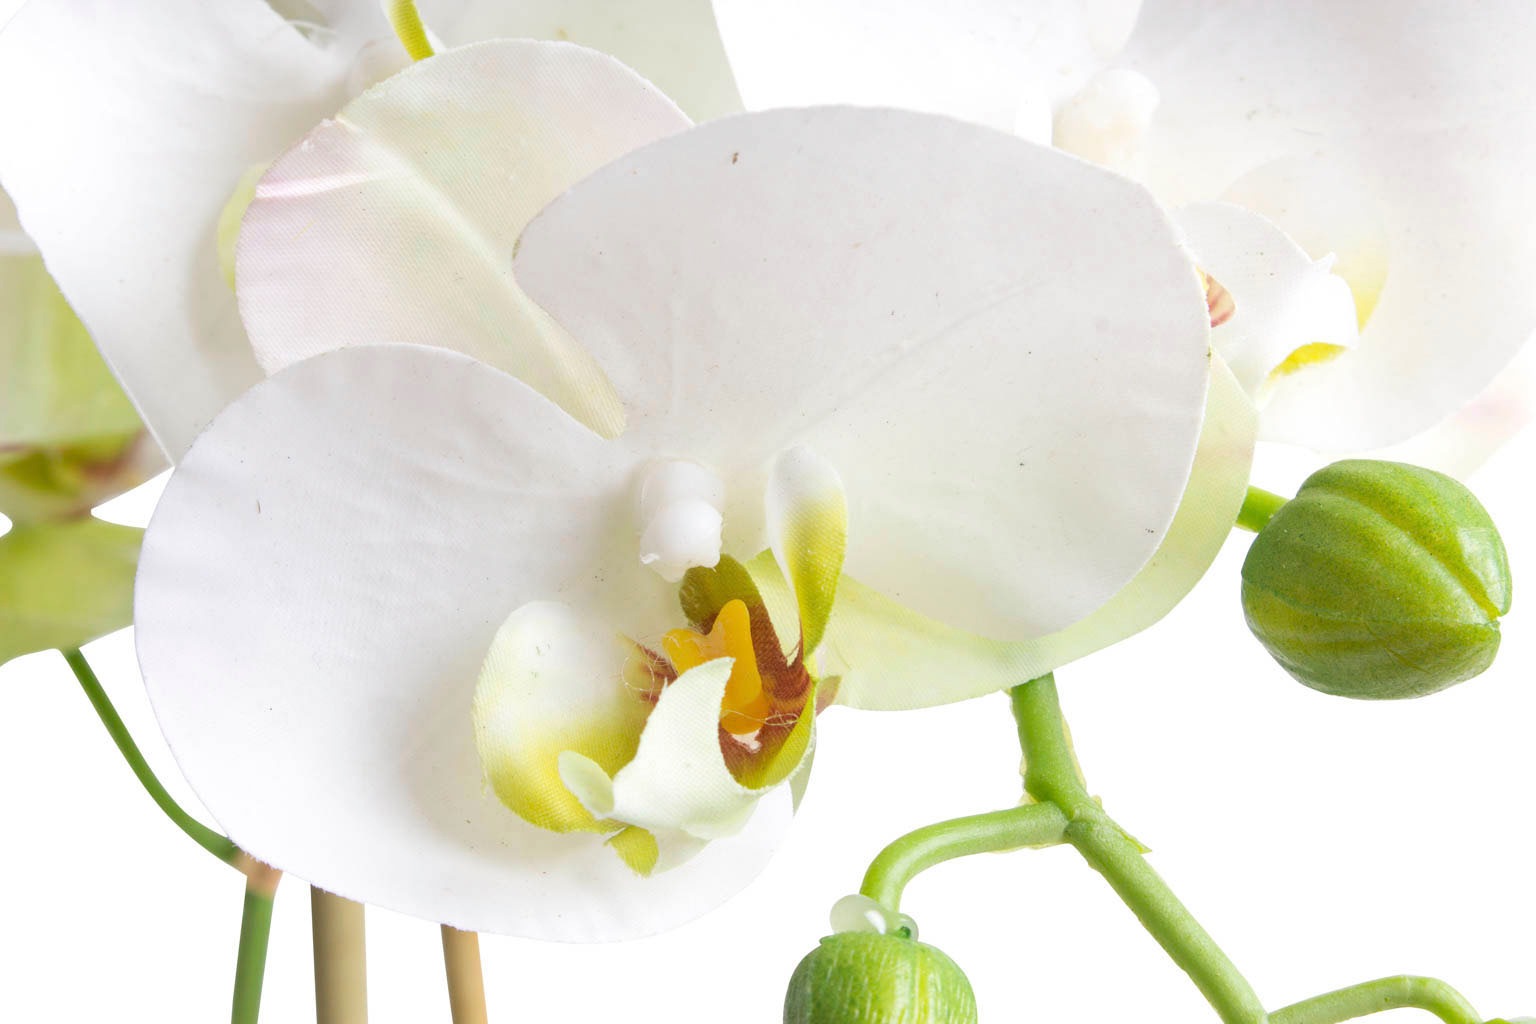 Botanic-Haus Kunstorchidee »Orchidee Bora« auf Raten bestellen